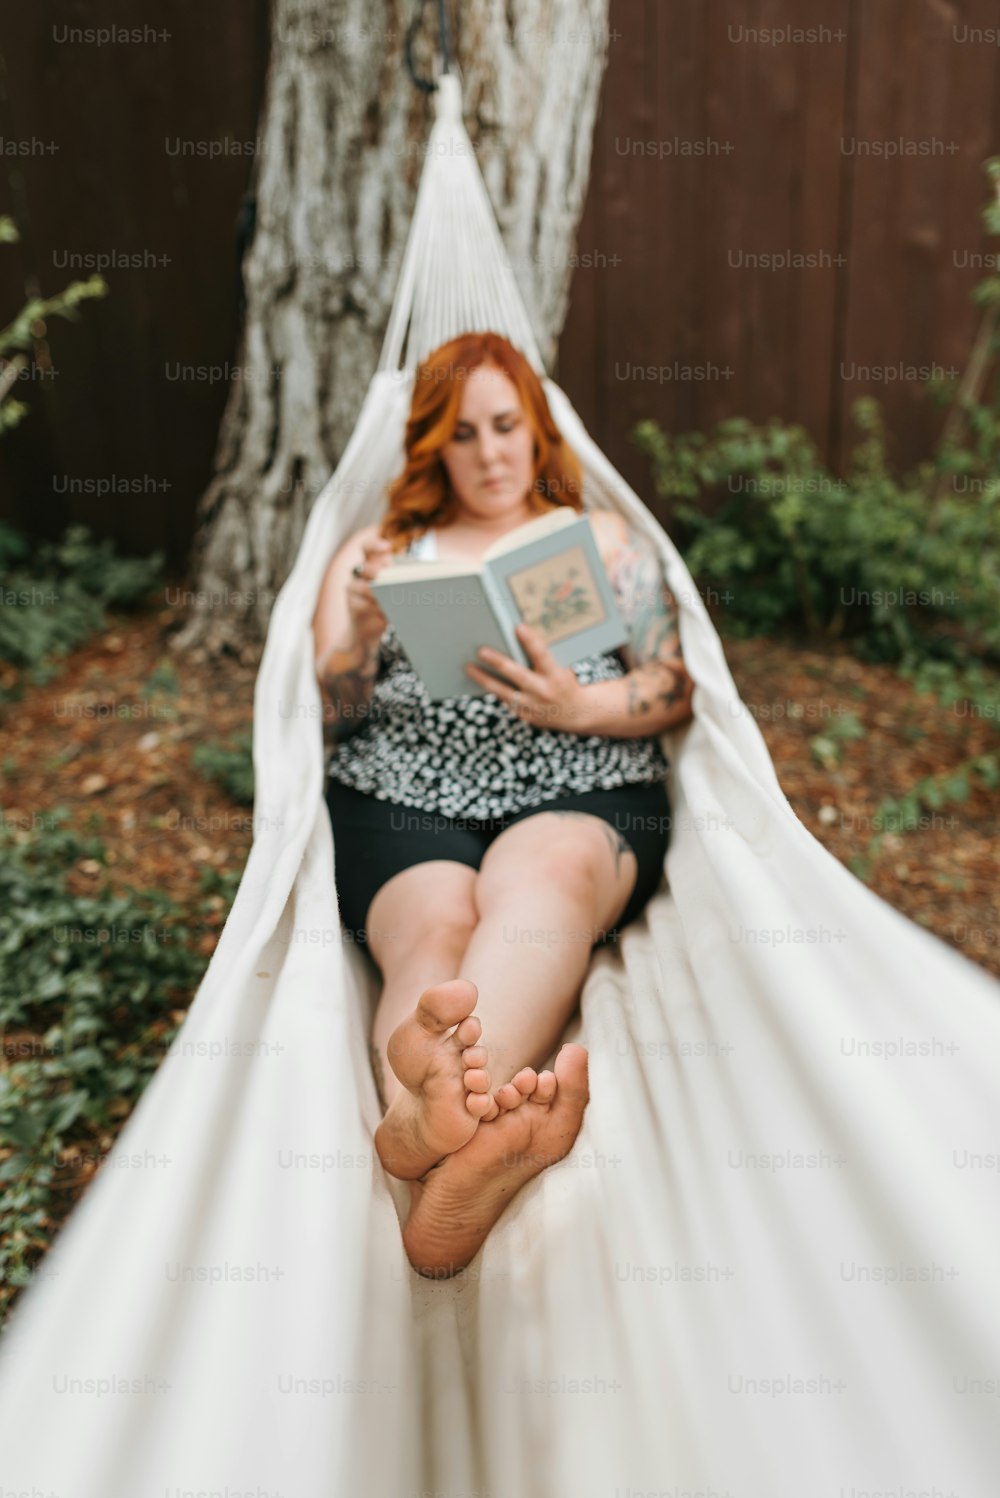 Una mujer sentada en una hamaca leyendo un libro